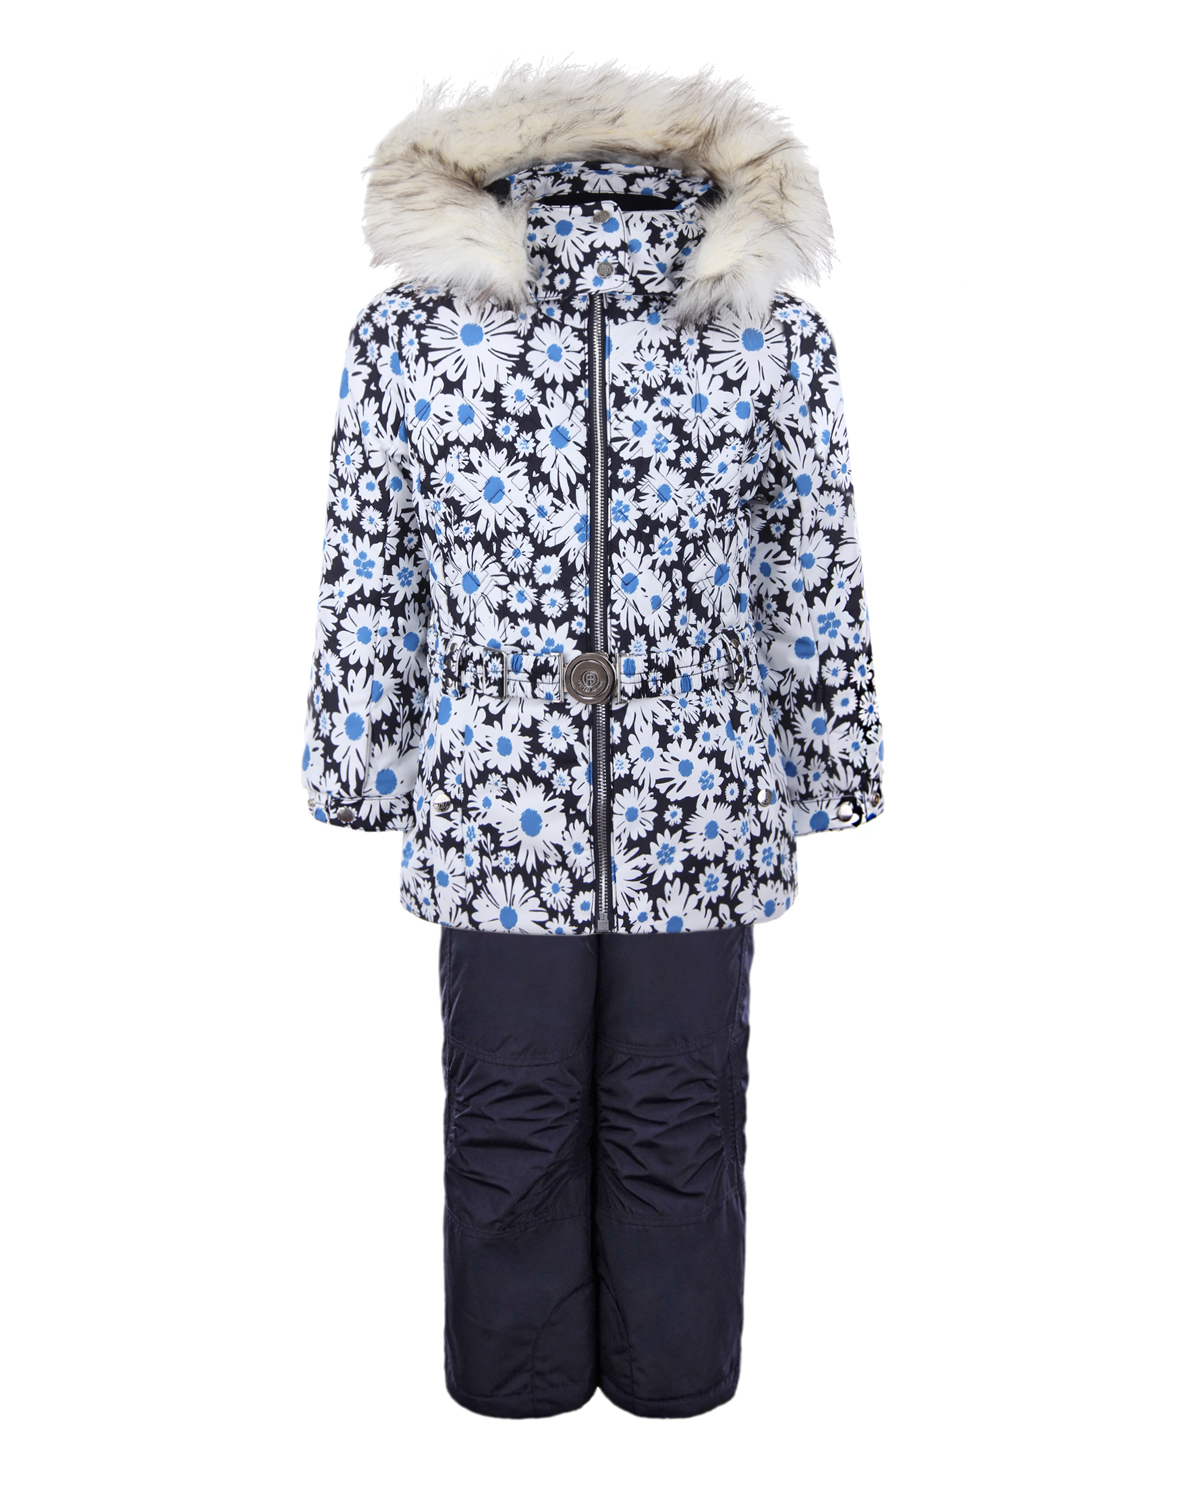 Зимний комплект из куртки и полукомбинезона для девочек Poivre Blanc детский